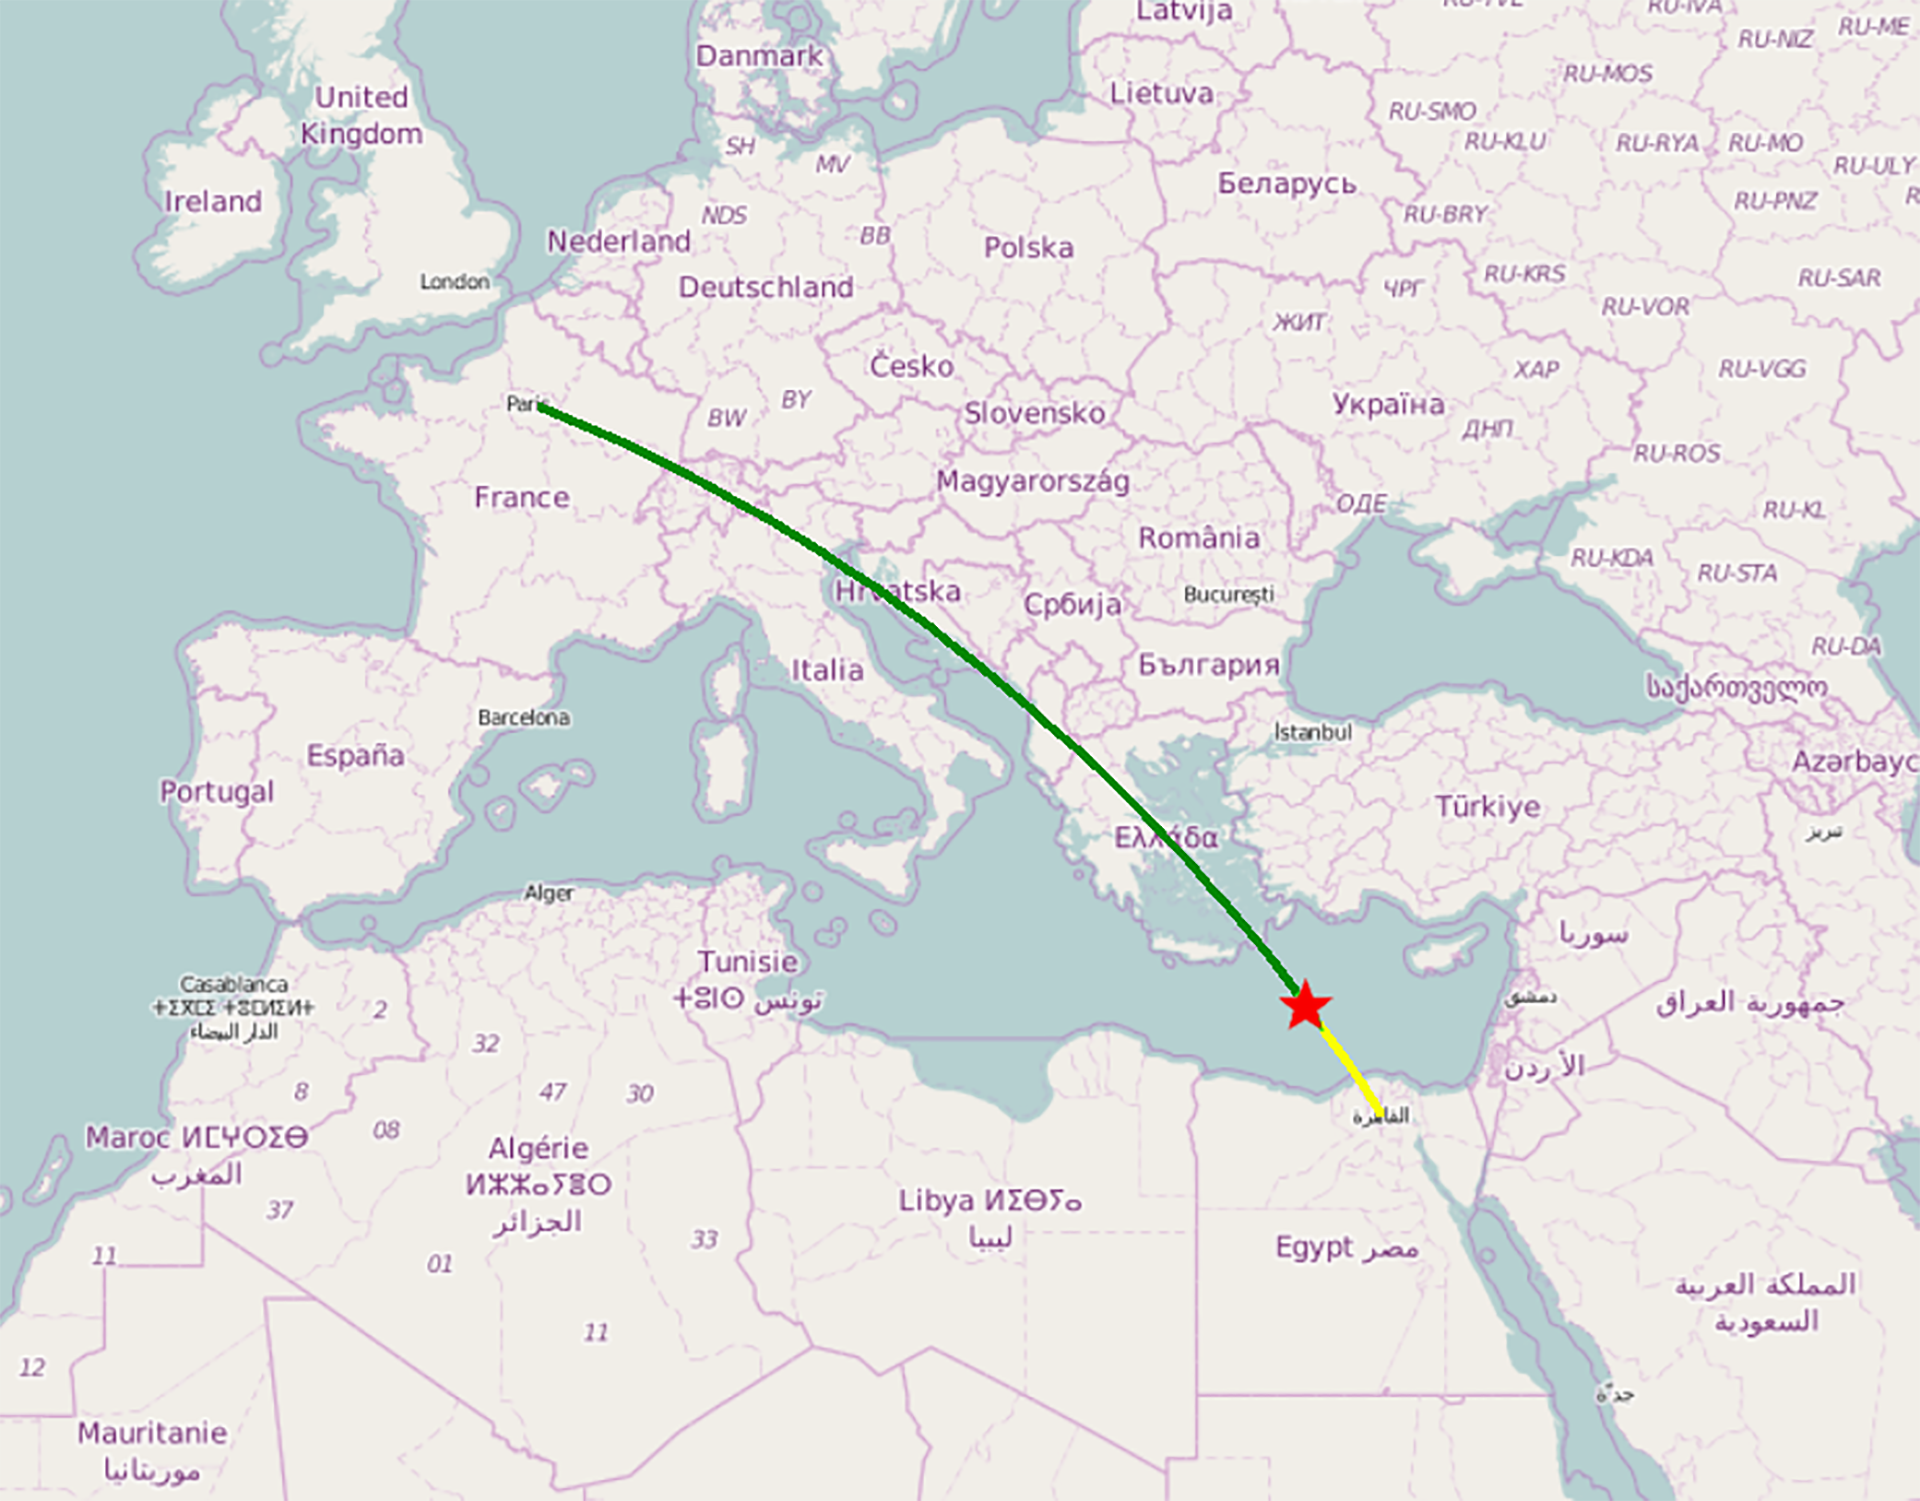 Mapa del trayecto que hizo el MS804 hasta desaparecer de los radares y caer al mar Mediterráneo, la estrella roja marca el lugar del accidente, mientras que la ruta en verde es el recorrido que ya había hecho, y el amarillo lo que le faltaba